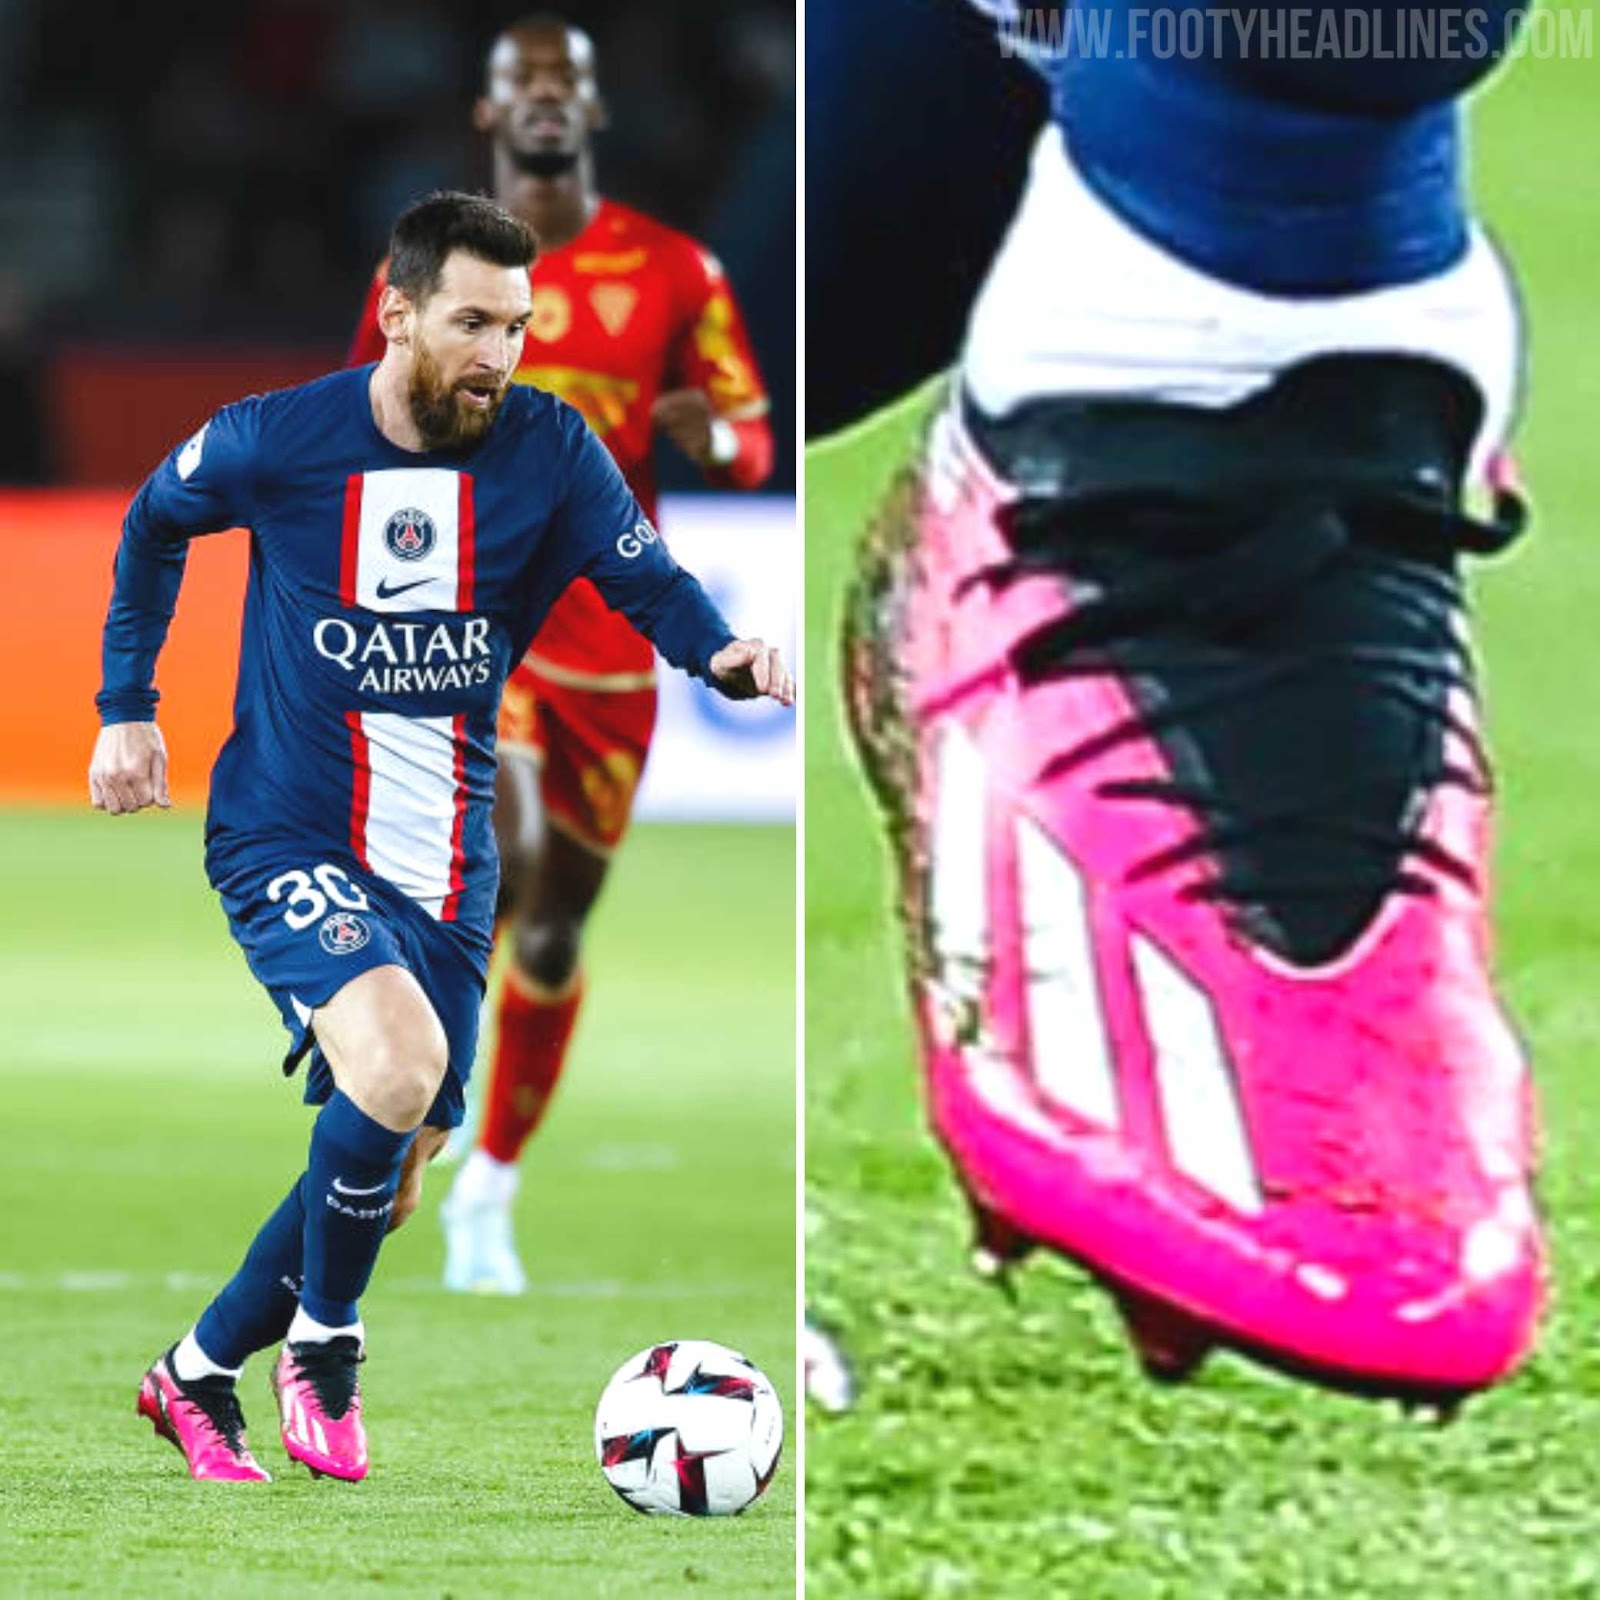 comestible Incidente, evento Estar confundido Messi & Donnarumma Wear Unreleased (Next-Gen) Adidas Predator & X Boots -  Footy Headlines